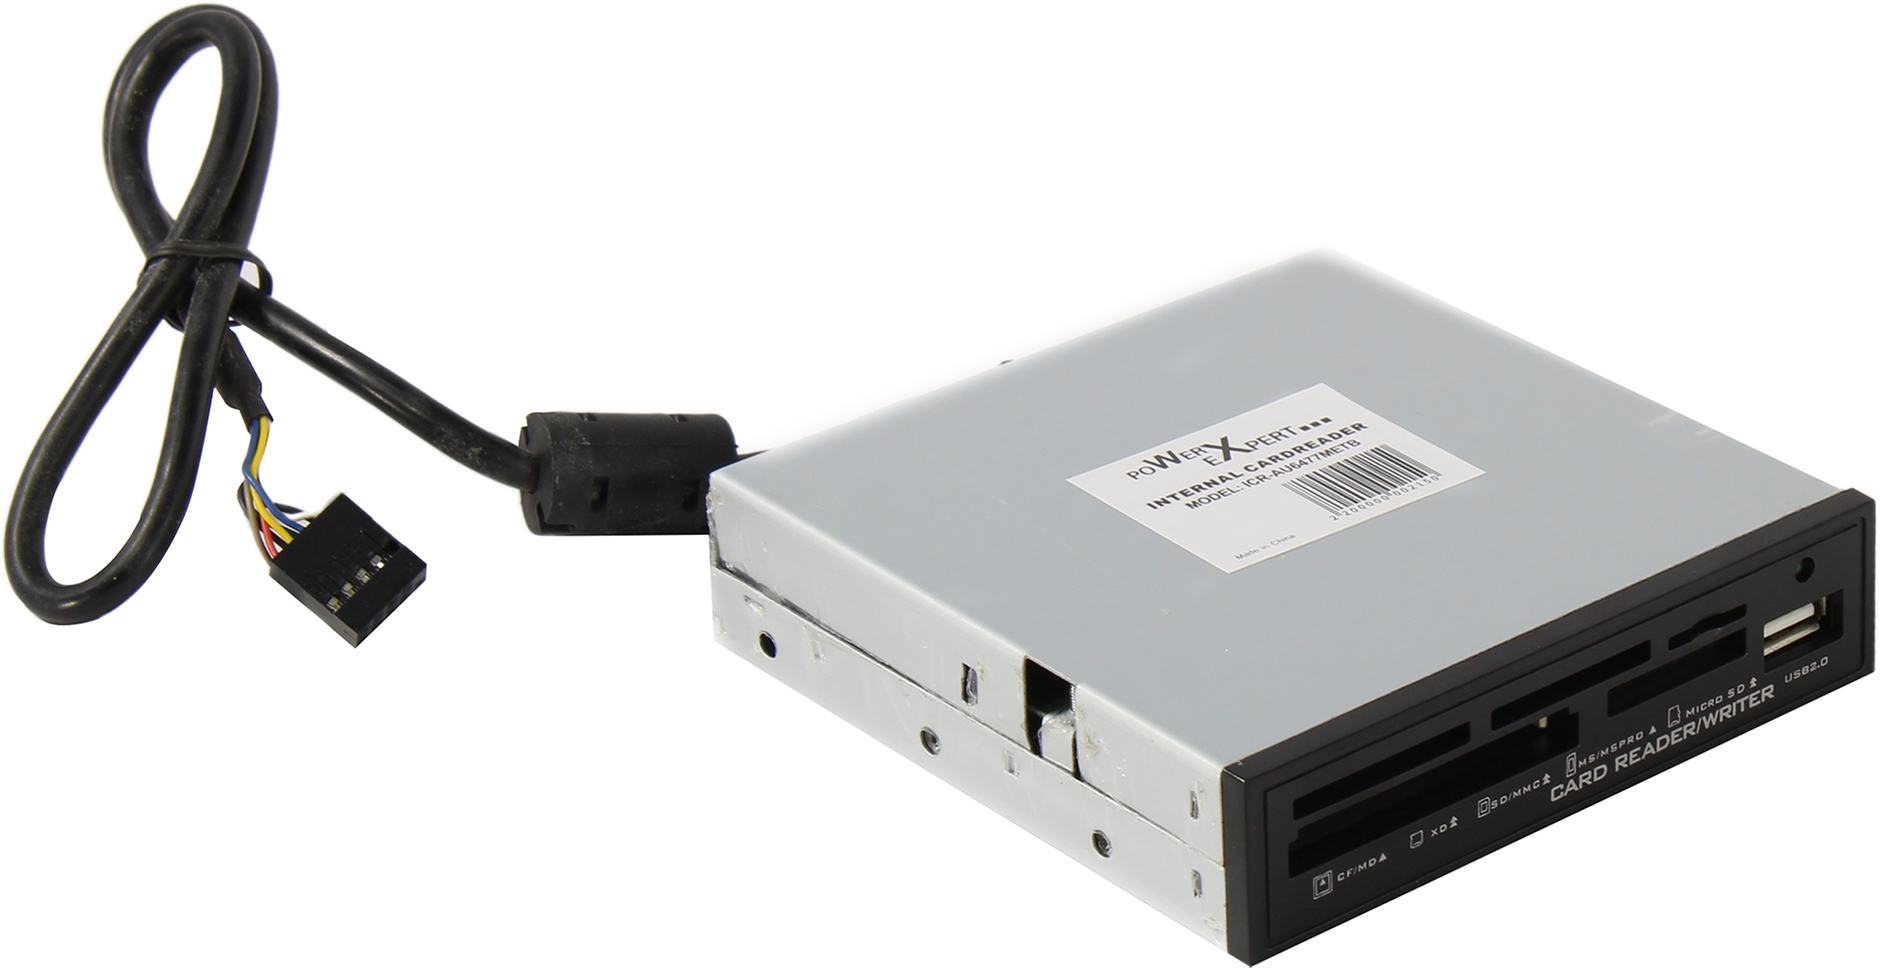 Картридер внутренний Power Expert CR-AU6477METB, SD/MMC/MS/MSPRO/MicroSD 1xUSB 2.0, USB 2.0 (колодка), черный (CART-R-ICR-AU6477METB)